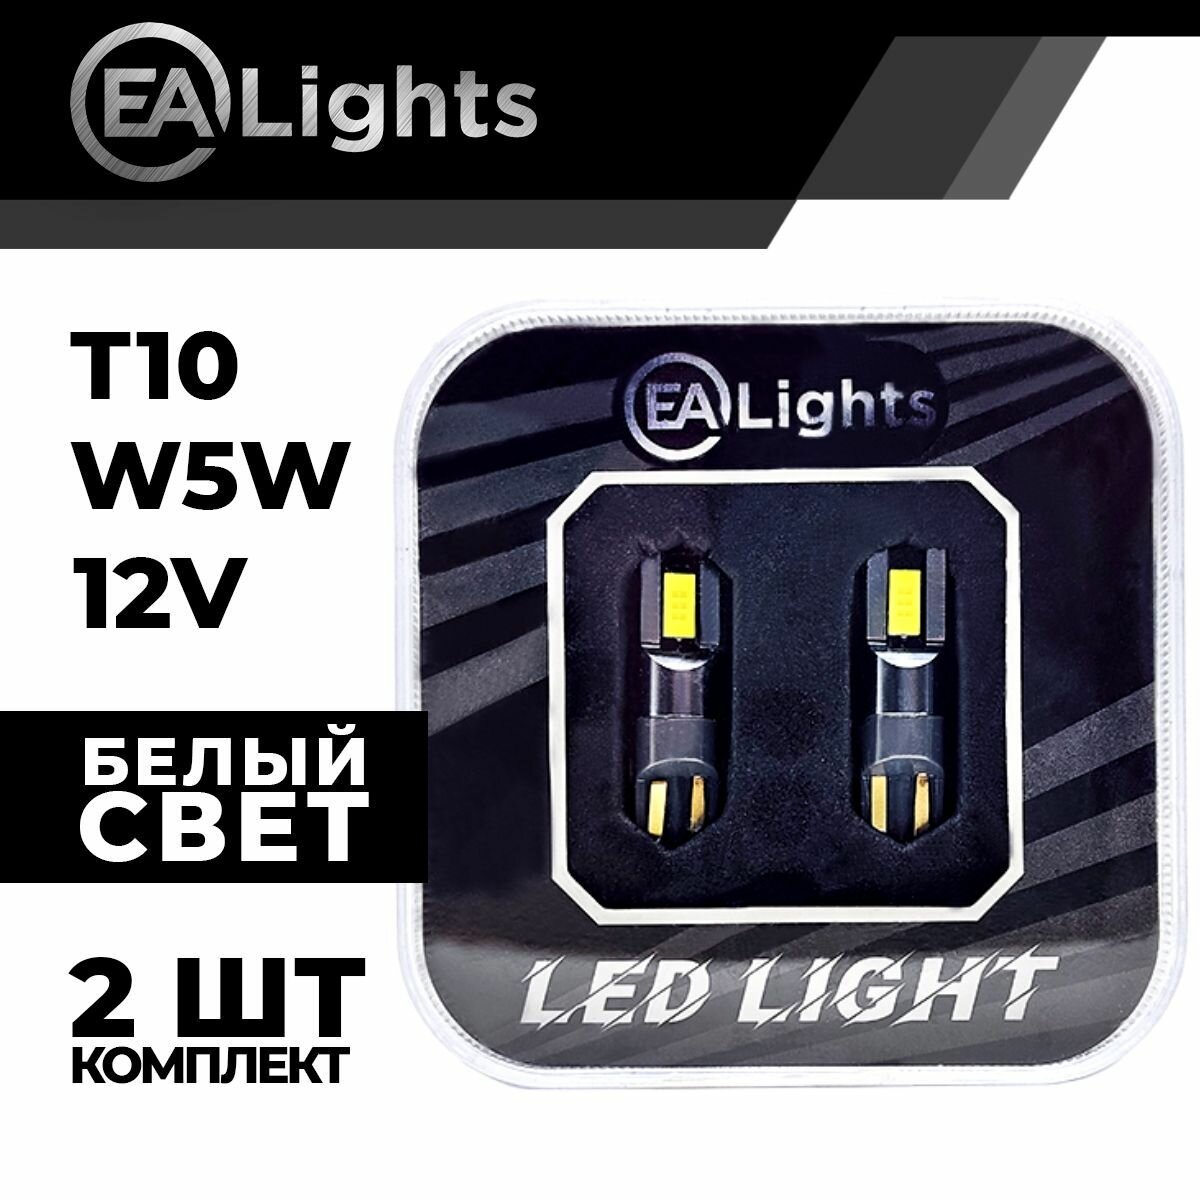 Автомобильная светодиодная LED лампа T10 W5W (чип 3570-3) для подсветки салона, багажника, номерного знака, 12в белый свет, 2 шт